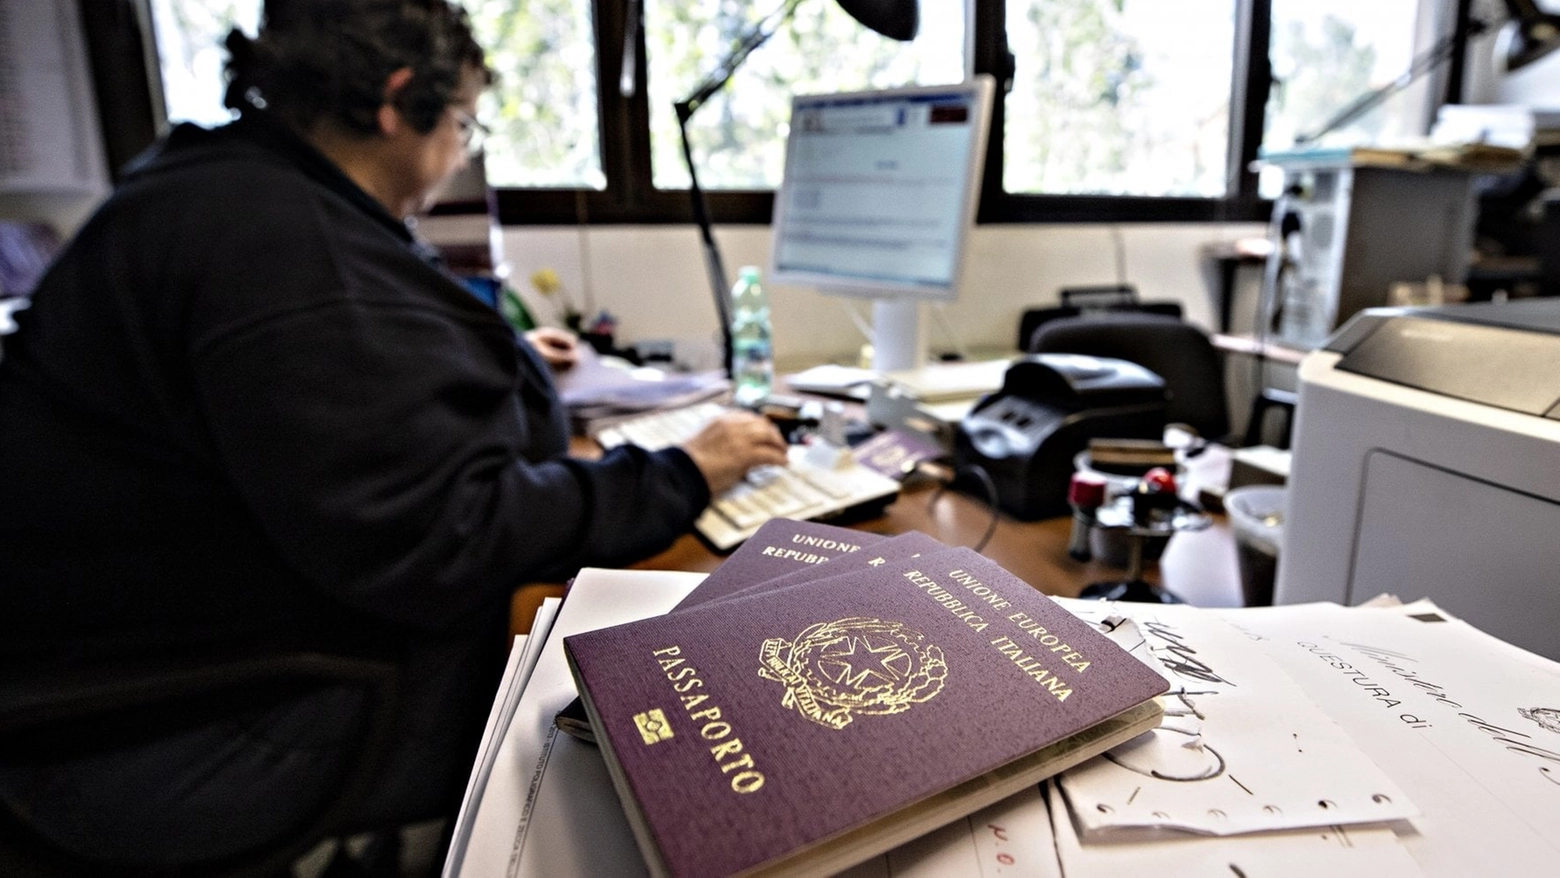 Uffici passaporto della Questura di Monza aperto straordinariamente sabato 20 gennaio